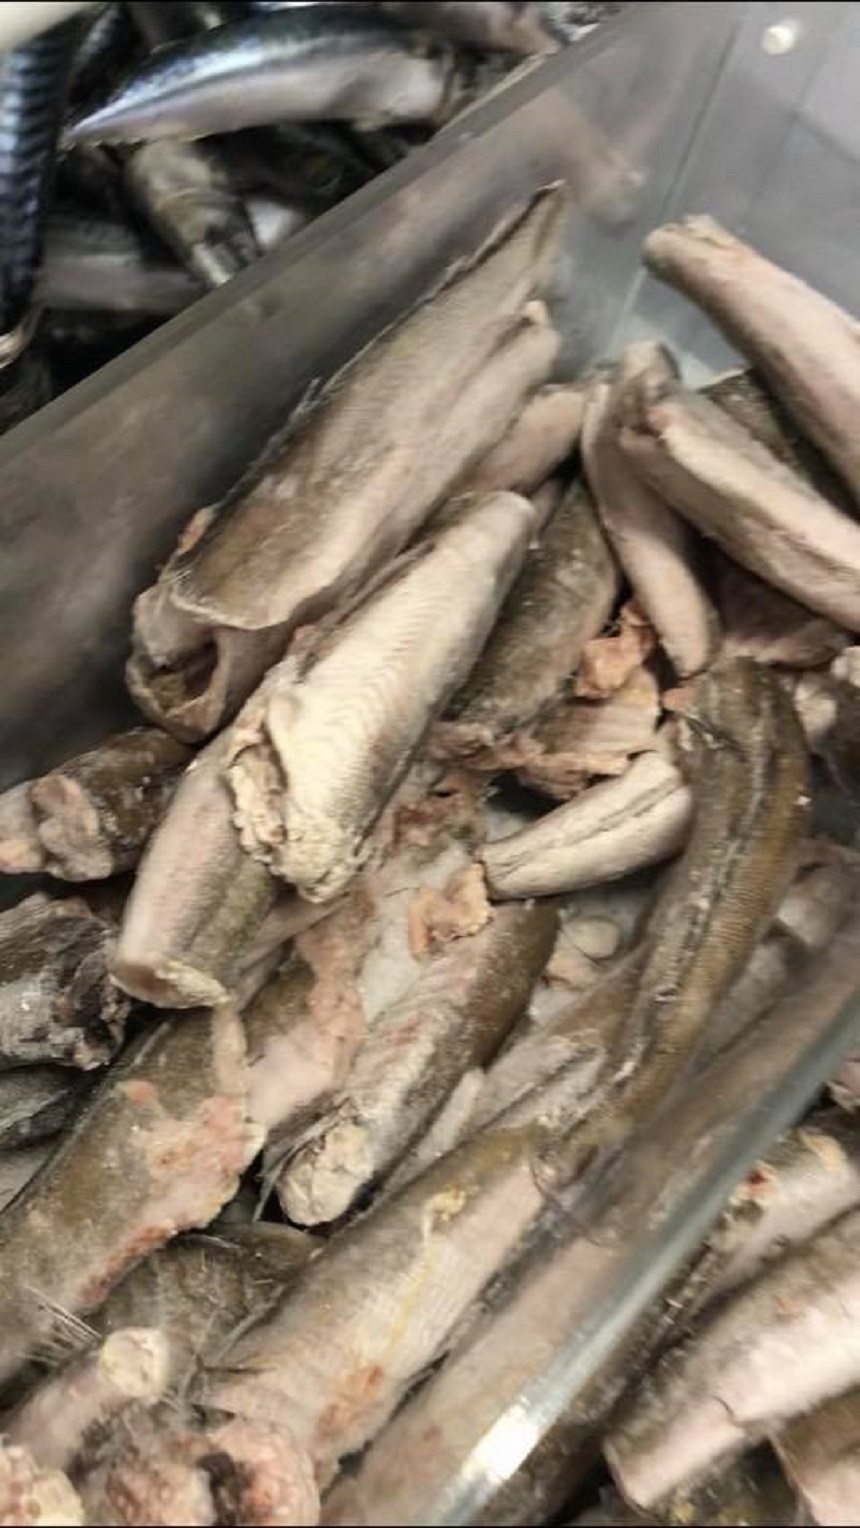 Avertisment de la ANPC: Nu cumpăraţi peşte şi produse din peşte din locuri neautorizate! Nu achiziţionaţi produse cu suprafaţa mâzguită, lipicioasă, deshidratată!